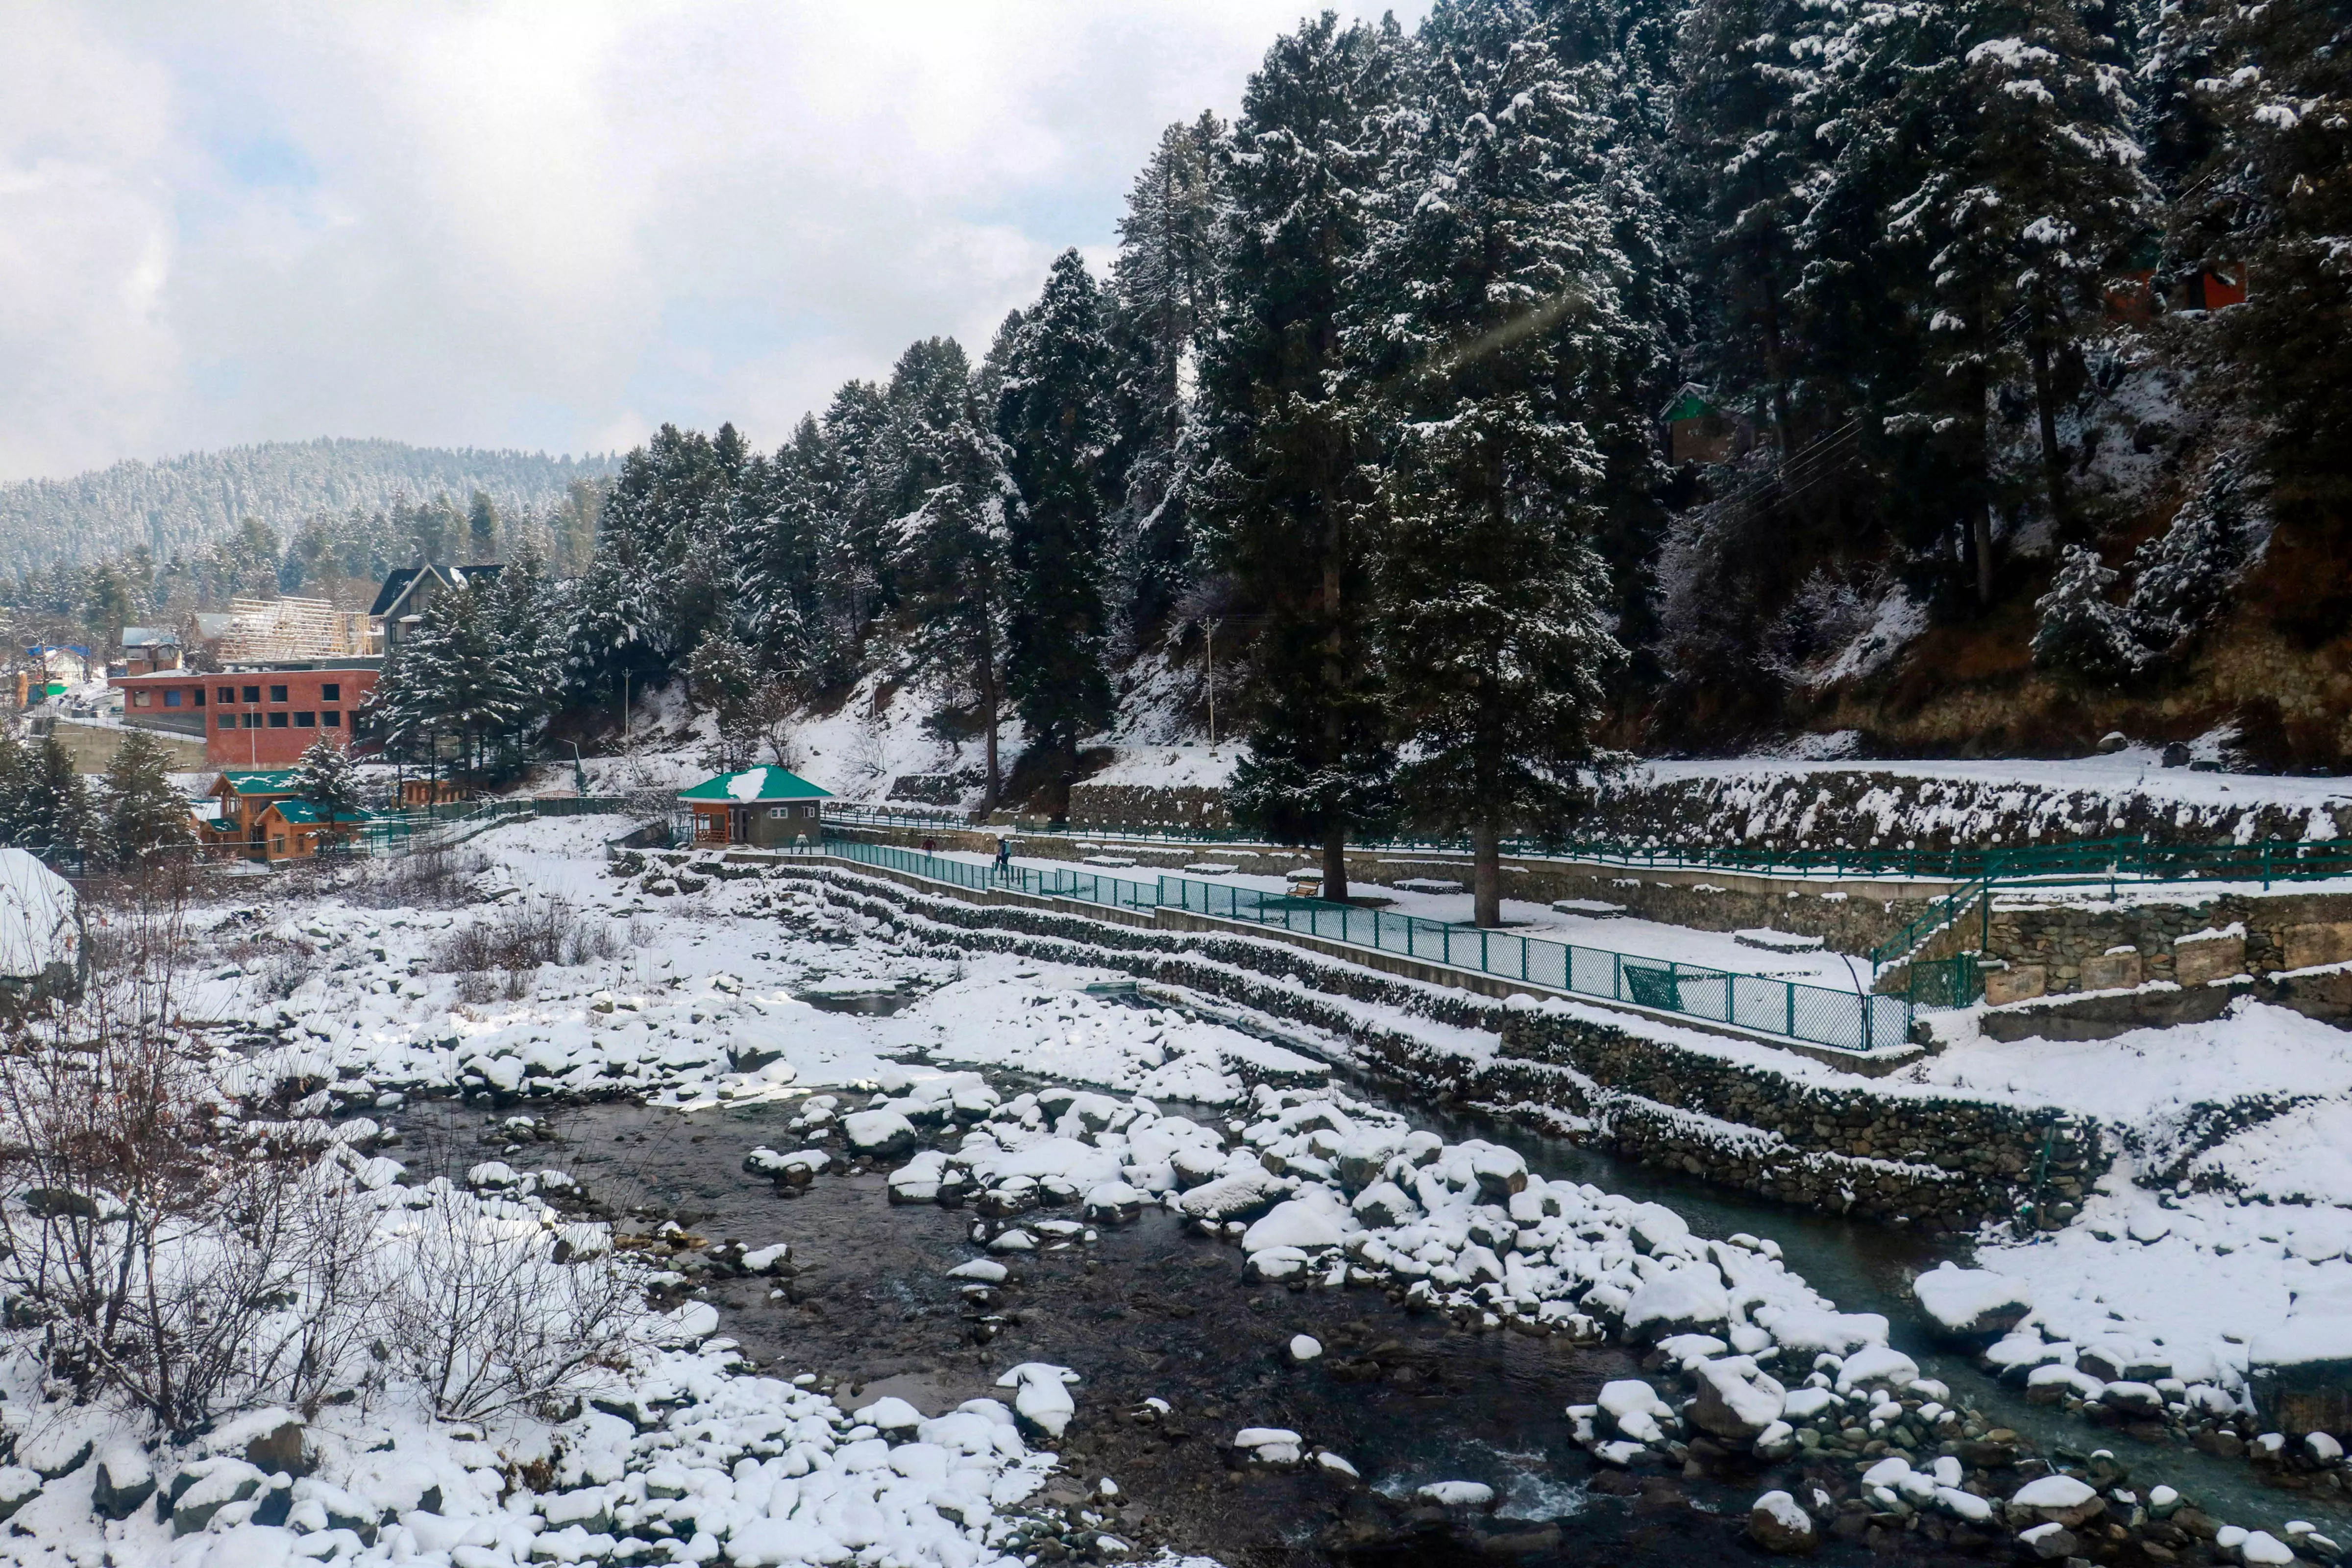 Snowfall at Chilla-i-Kalan fag-end brings cheer to Kashmir tourism sector